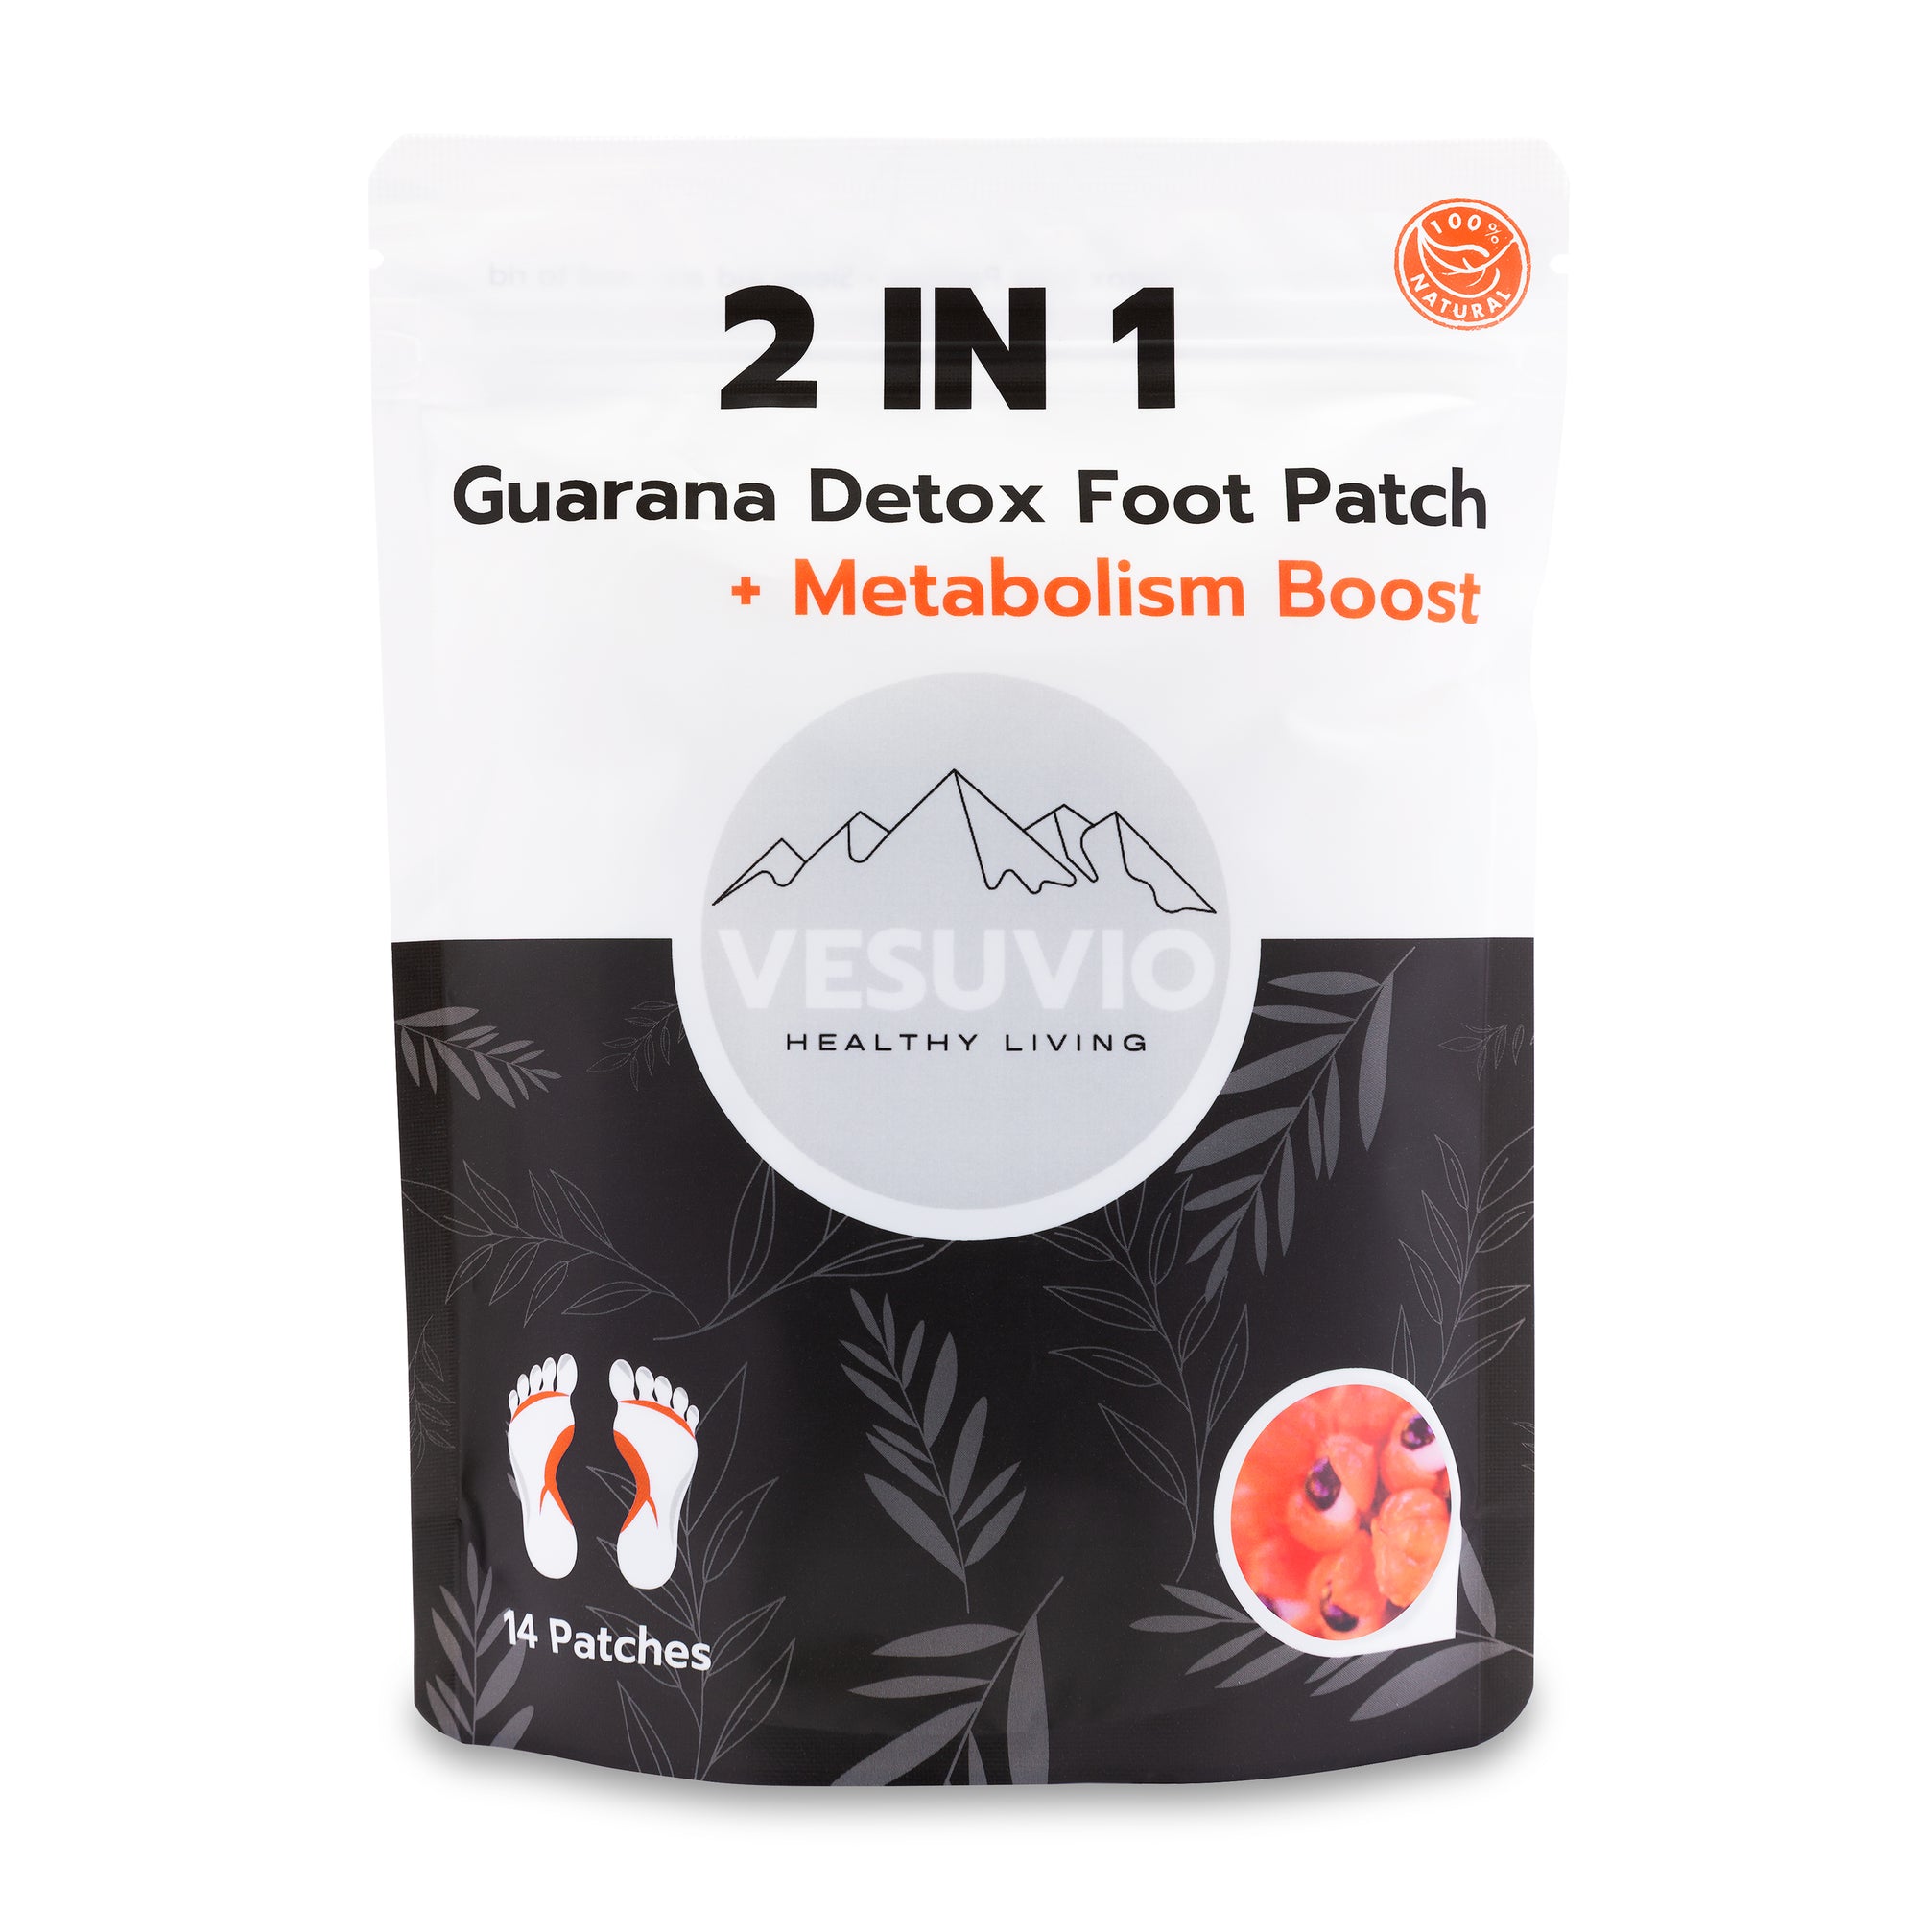 Guarana Detox Foot Patch + Metabolism Boost